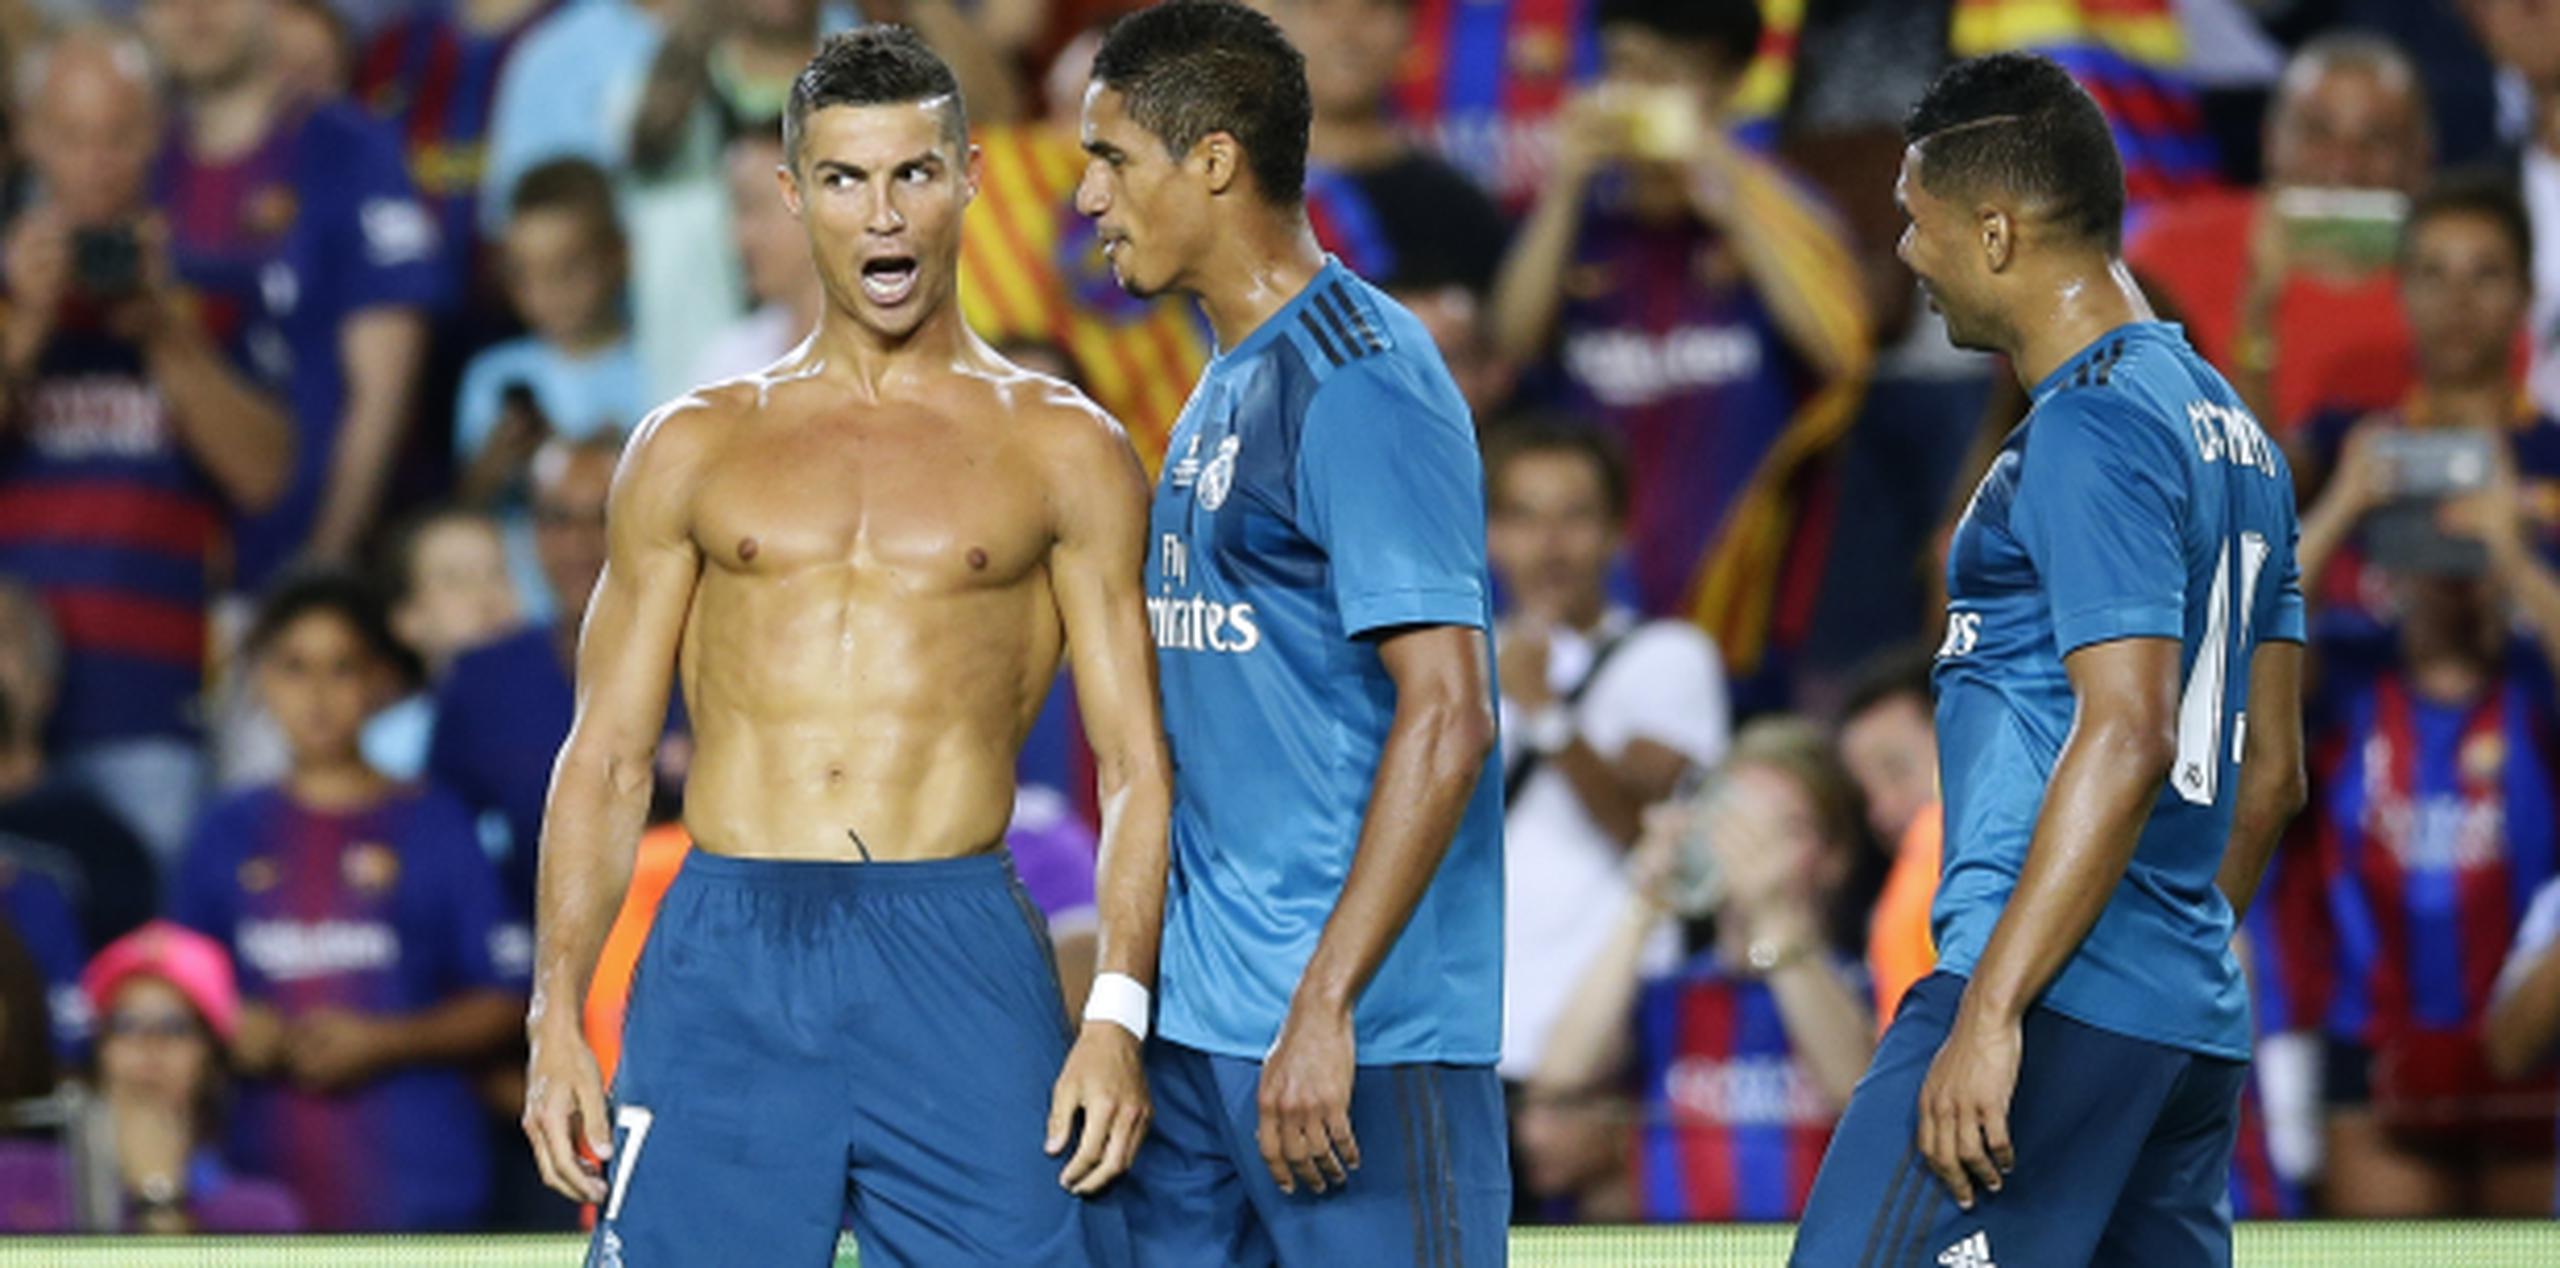 Cristiano se llevó la primera tarjeta amarilla por quitarse la camiseta para lucir sus músculos durante el festejo en el Camp Nou. (AP/Manu Fernandez)